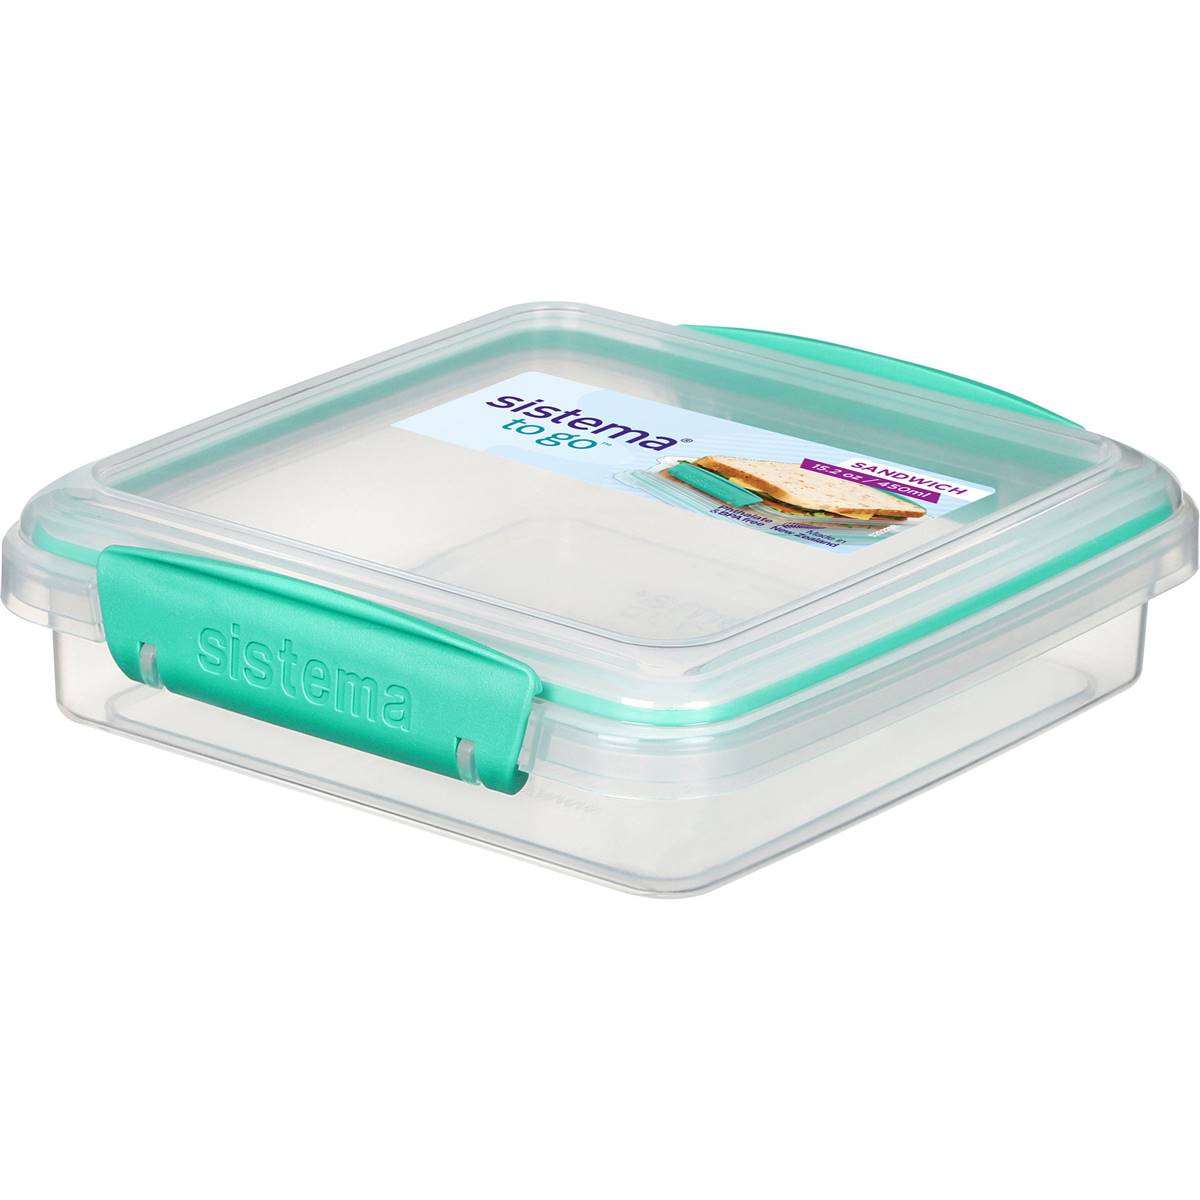 Sistema Plasticware Sandwich Box To Go